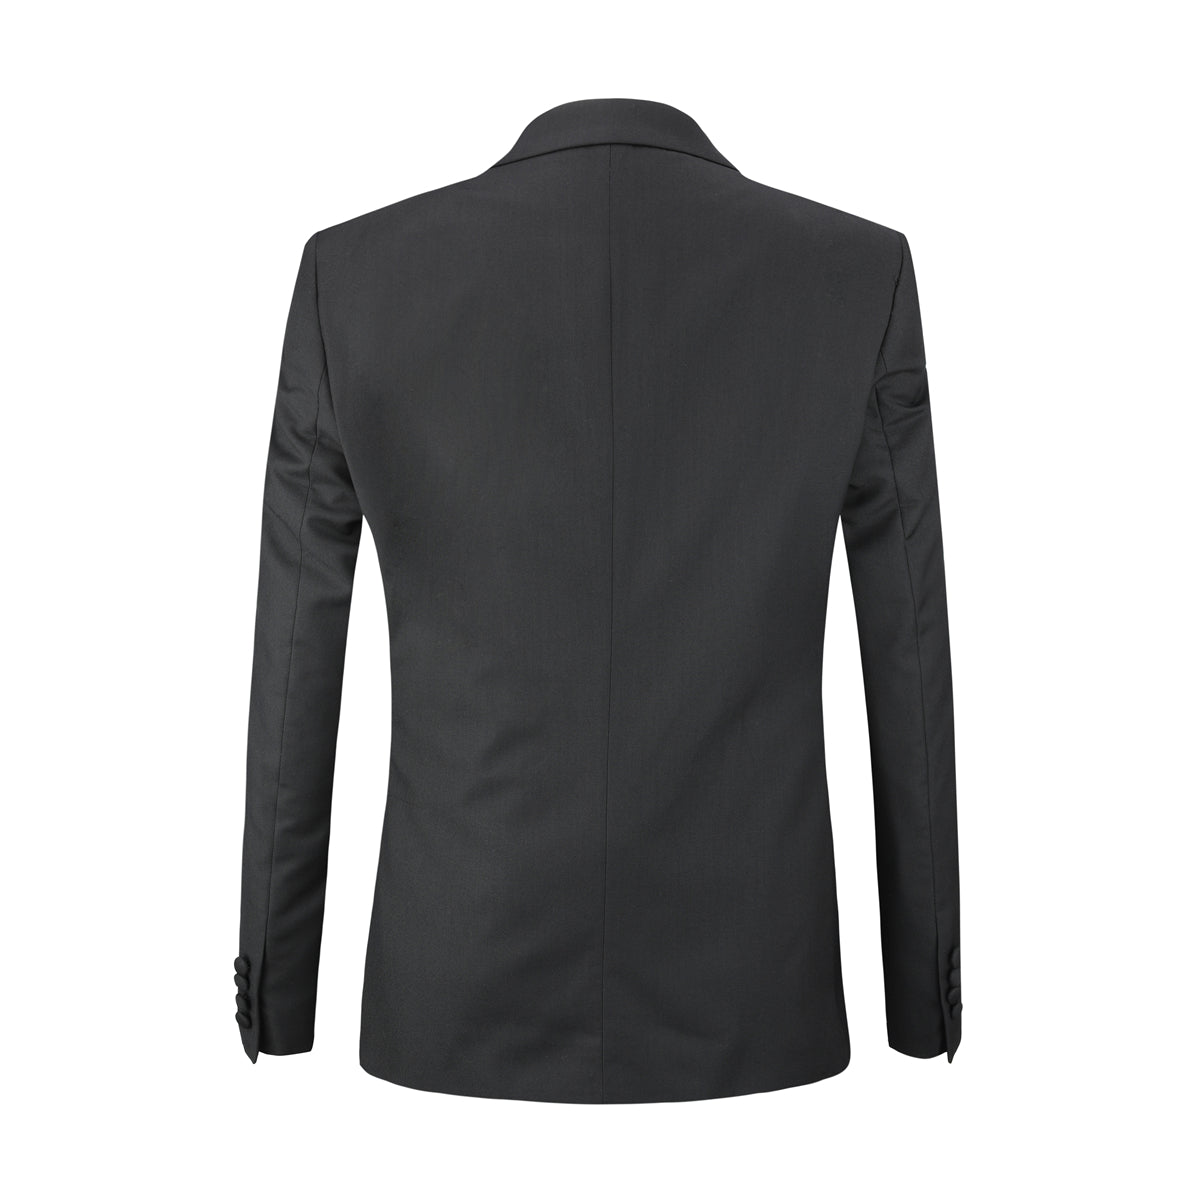 Men's 3-Piece Fashion One Button Color-Blocking Suit Grey